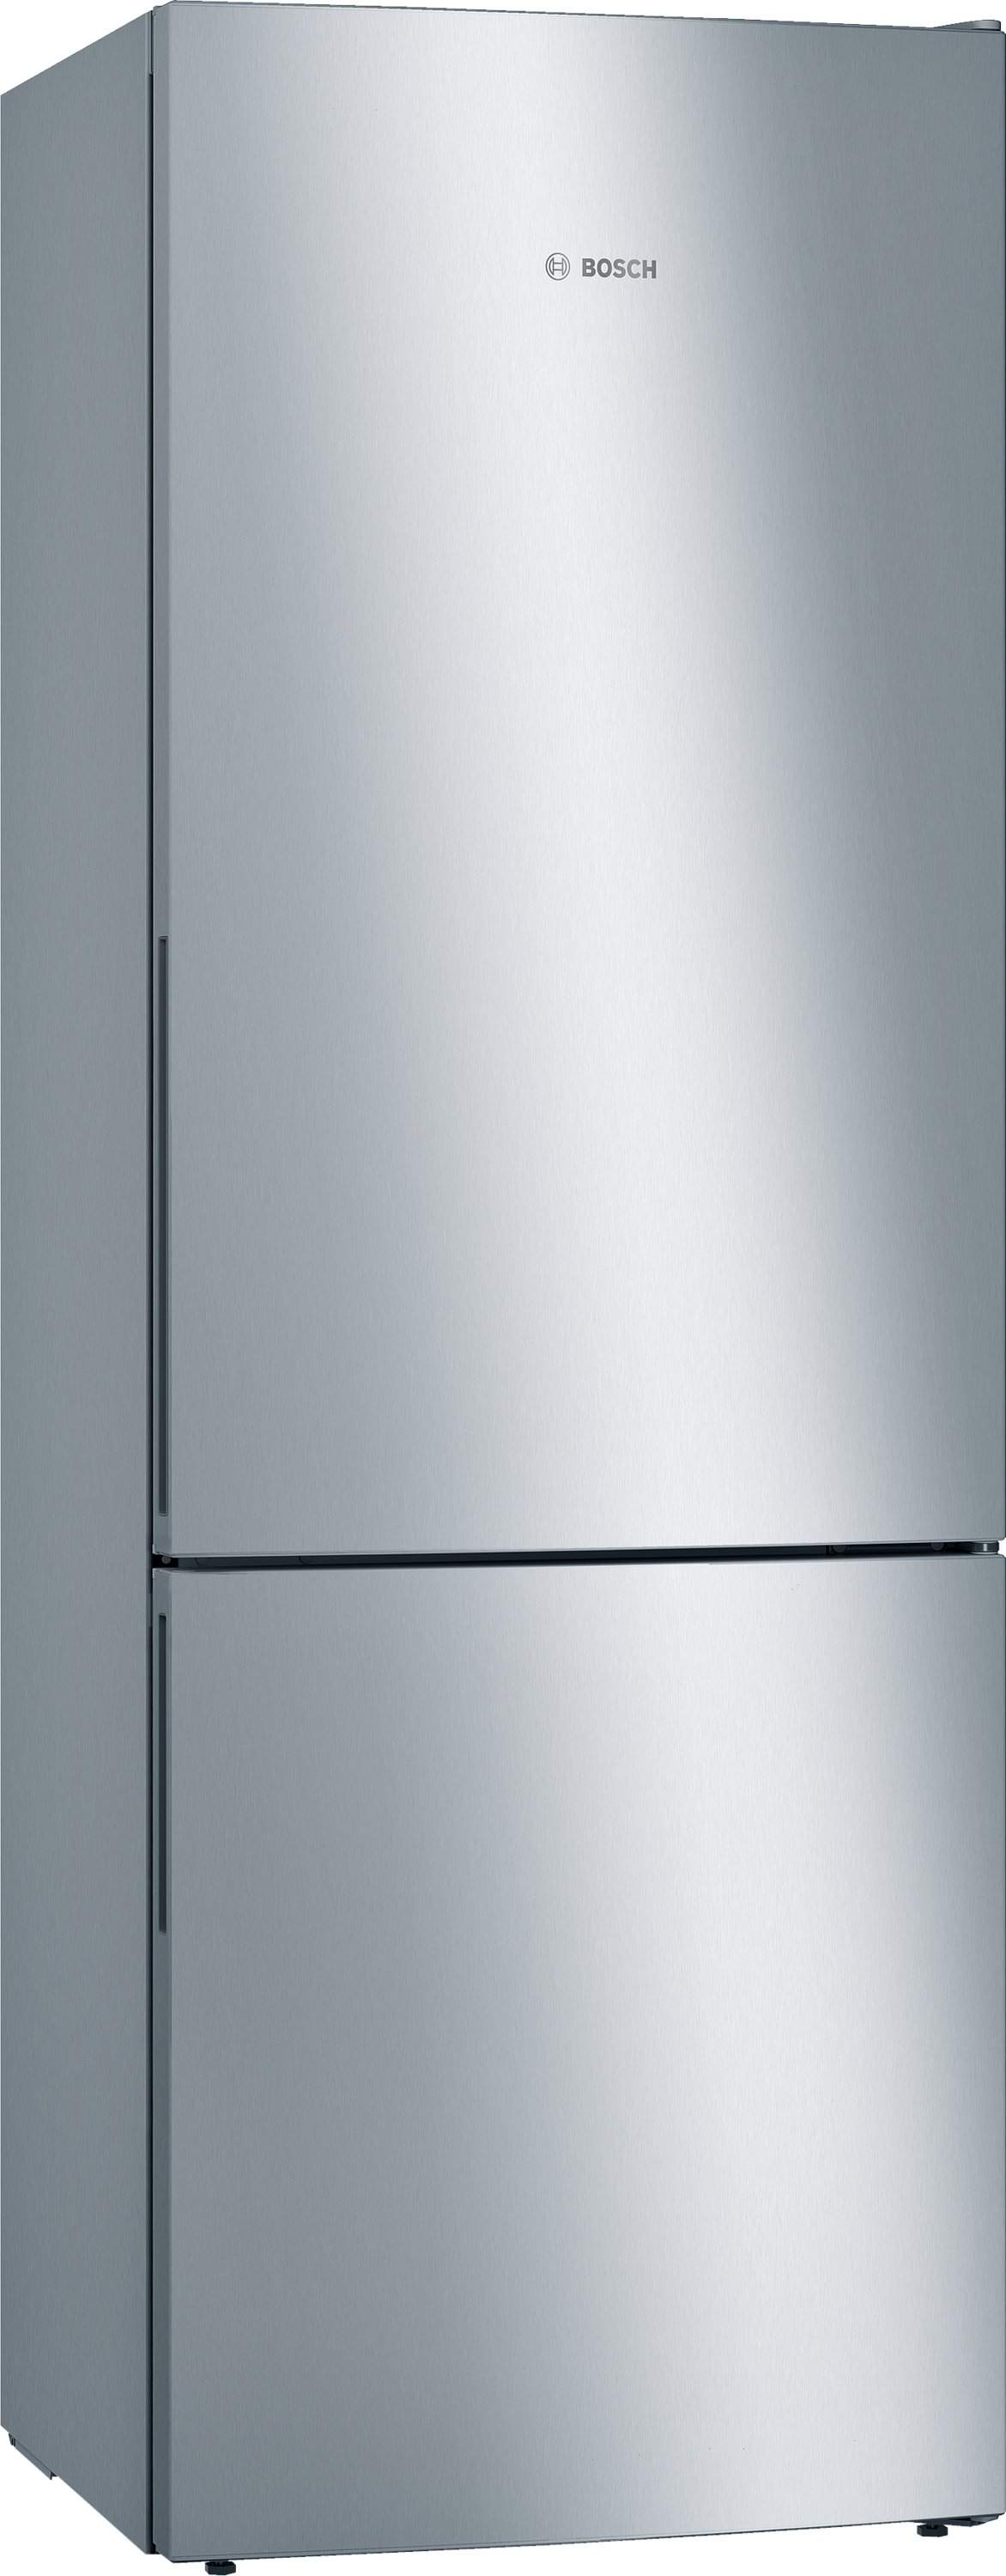 KGE49AICA Combină frigorifică independentă 201 x 70 Inox Look, 5 ANI GARANTIE.Clasa Energetica C